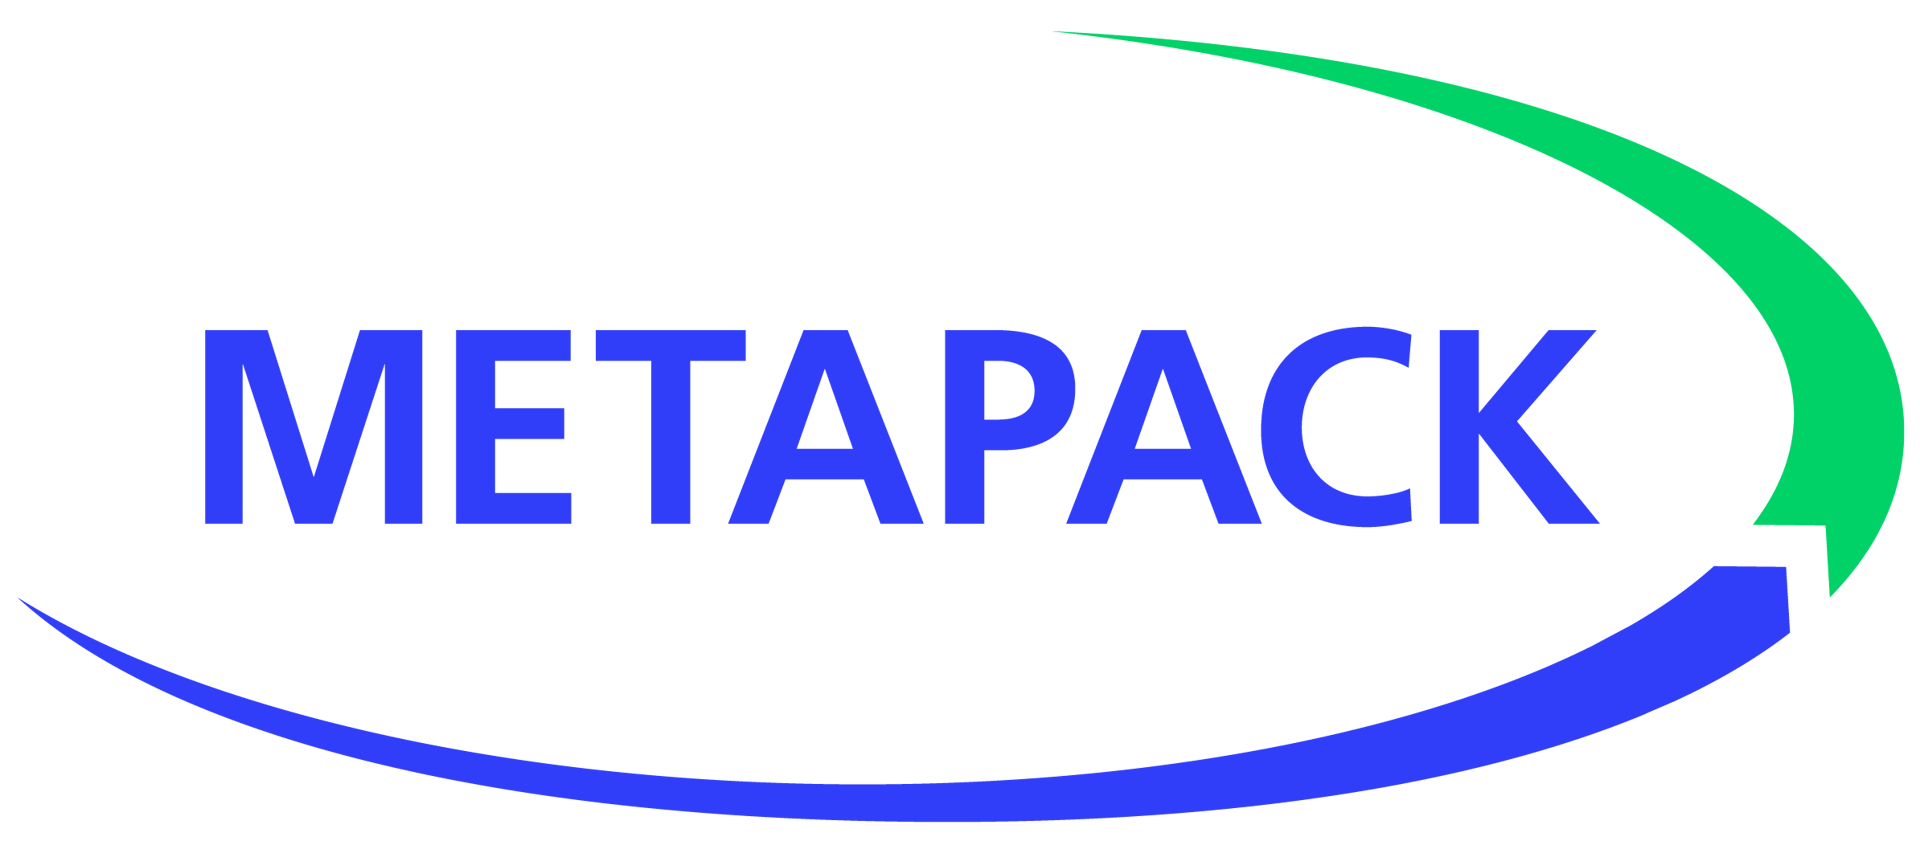 Metapack_logo_CMYK